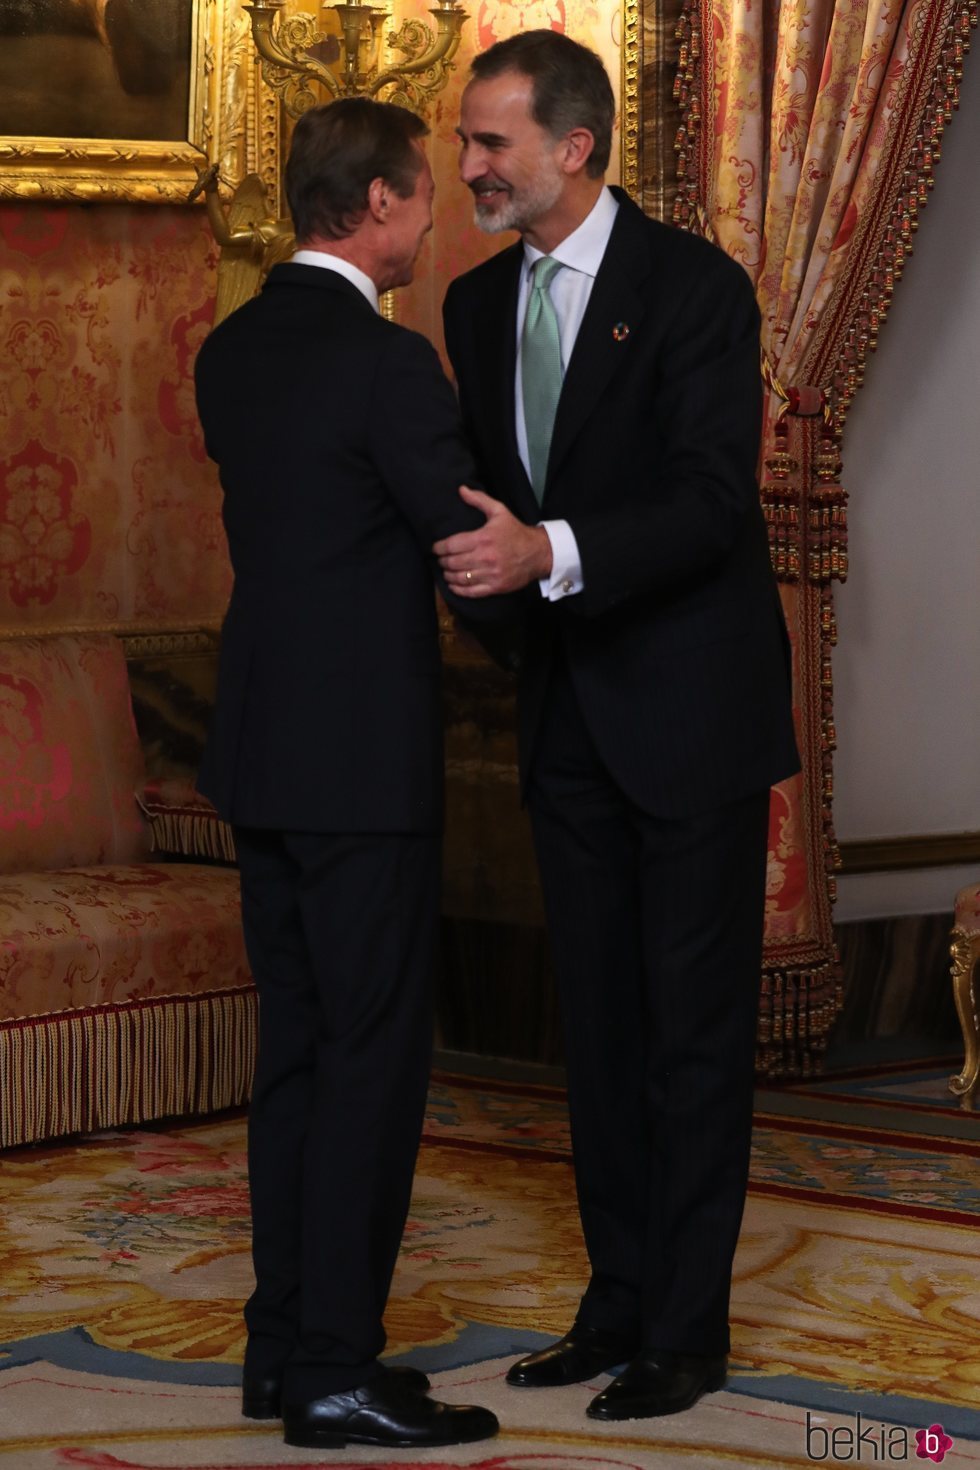 El Rey Felipe saluda a Enrique de Luxemburgo en la recepción por la Conferencia sobre el Cambio Climático